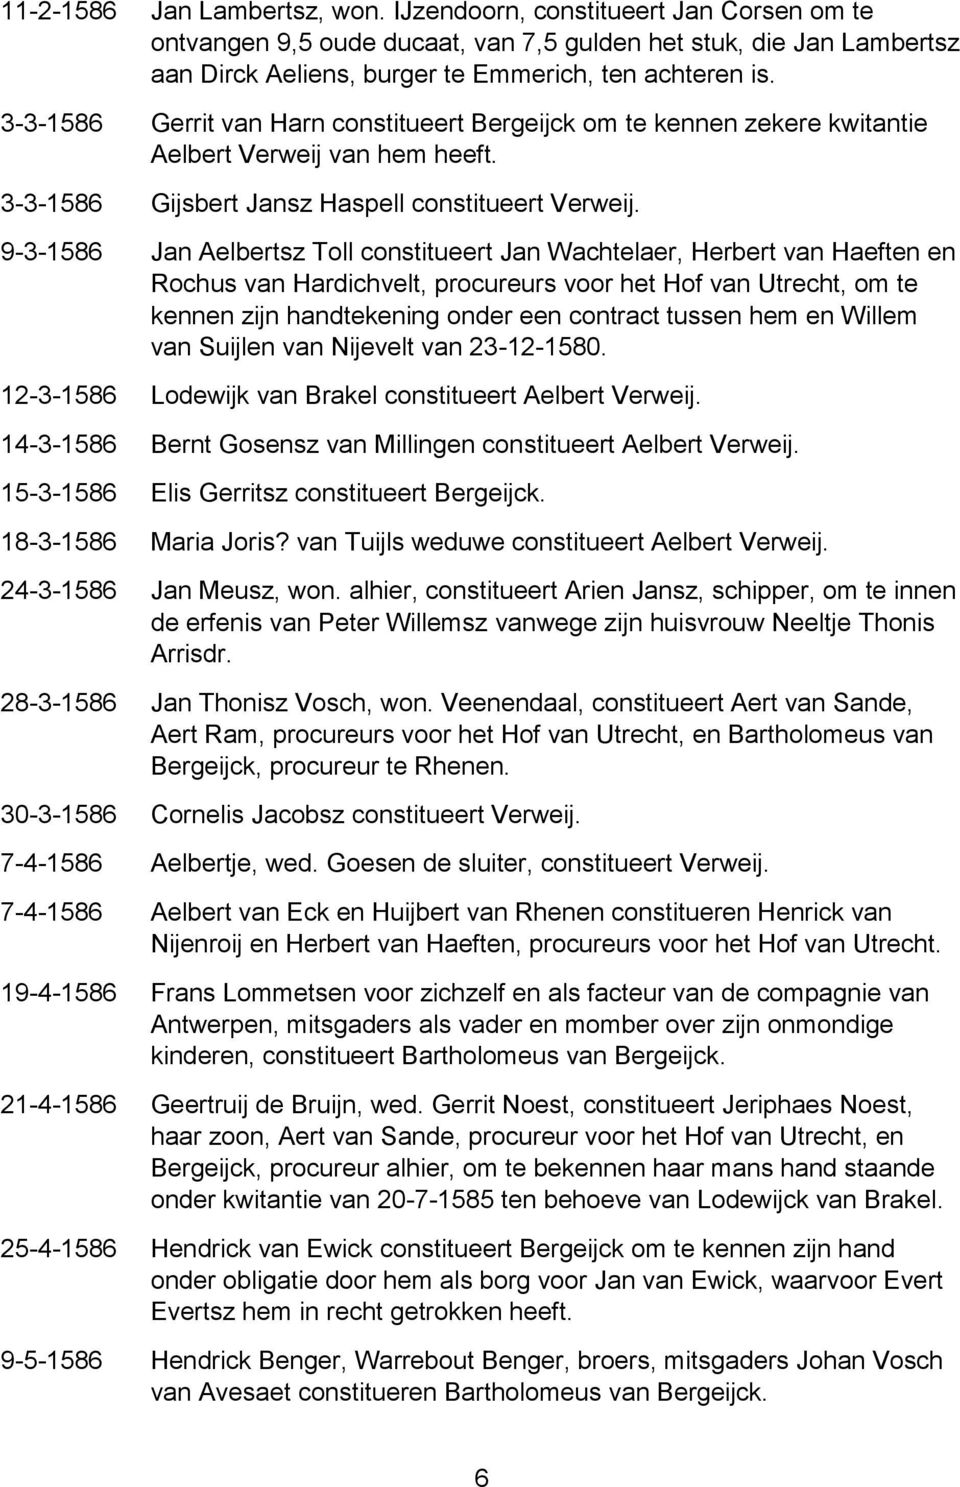 9-3-1586 Jan Aelbertsz Toll constitueert Jan Wachtelaer, Herbert van Haeften en Rochus van Hardichvelt, procureurs voor het Hof van Utrecht, om te kennen zijn handtekening onder een contract tussen